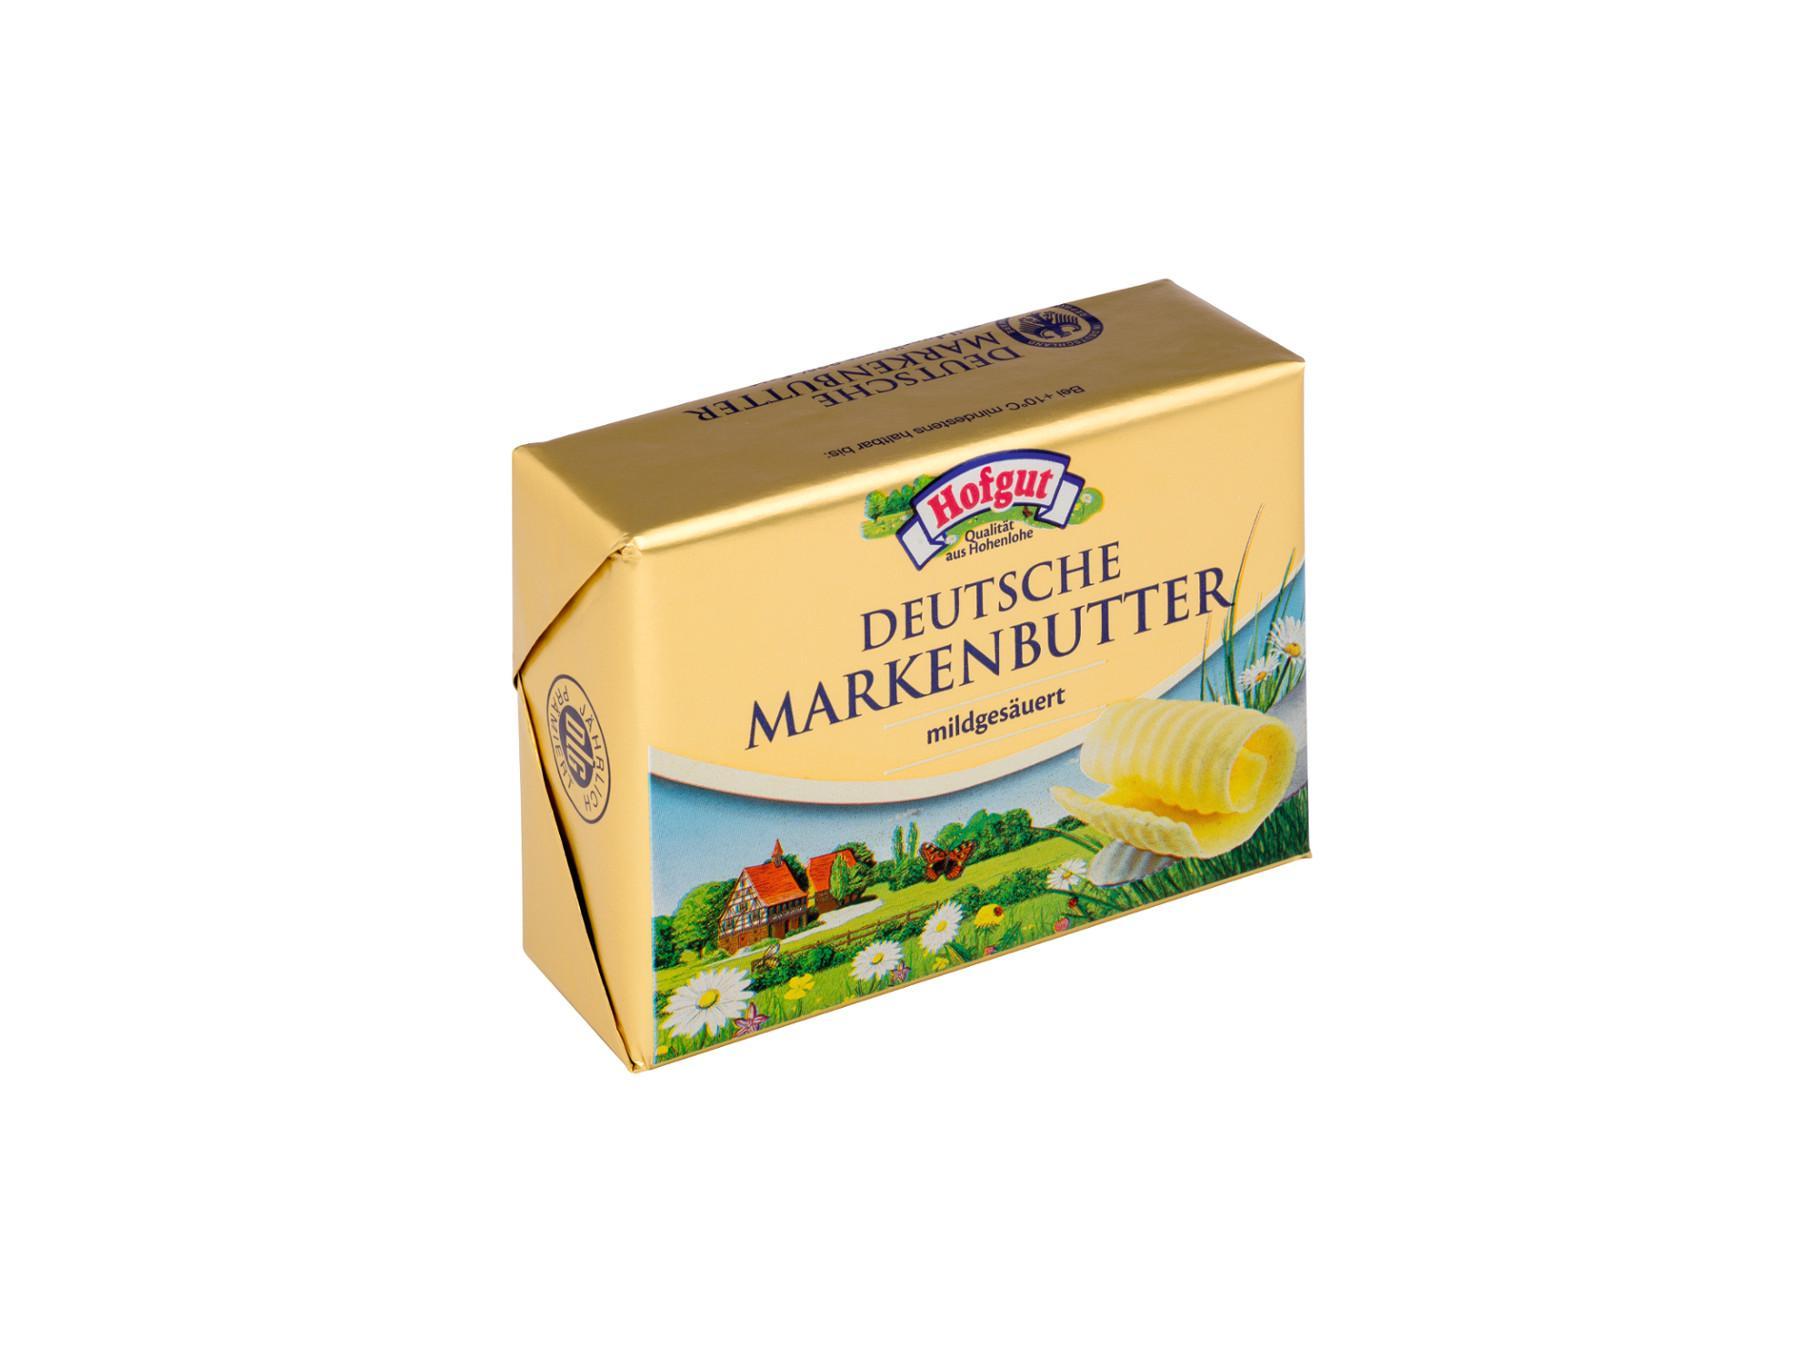 Hofgut Butter mildgesäuerte Deutsche Markenbutter